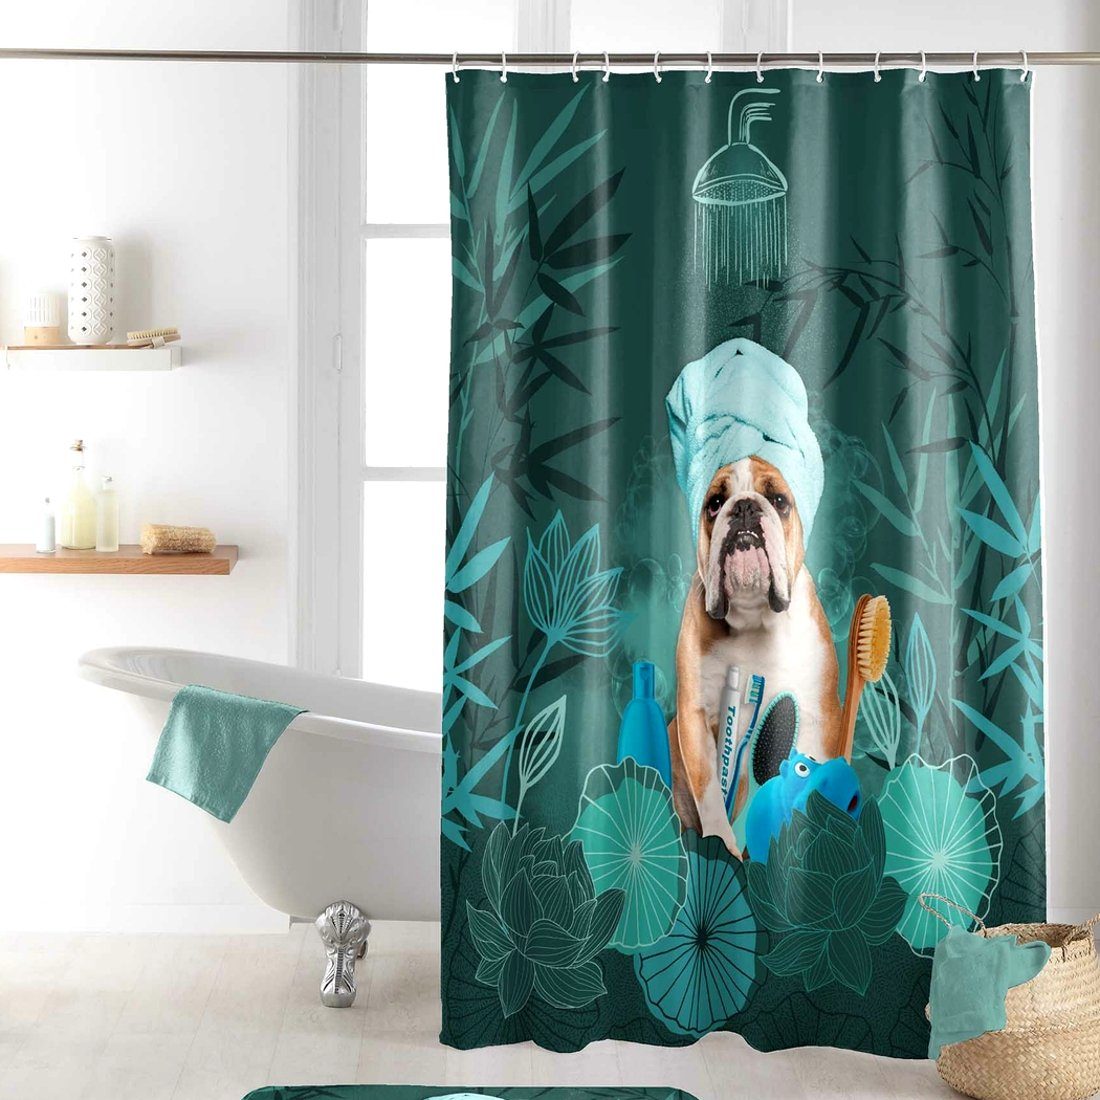 Sanixa Duschvorhang Breite 180 cm, Duschvorhang Textil 200x180 cm Hund grün  wasserabweisend waschbar Badewannenvorhang Vorhang hochwertige Qualität mit  Ringen Metallösen